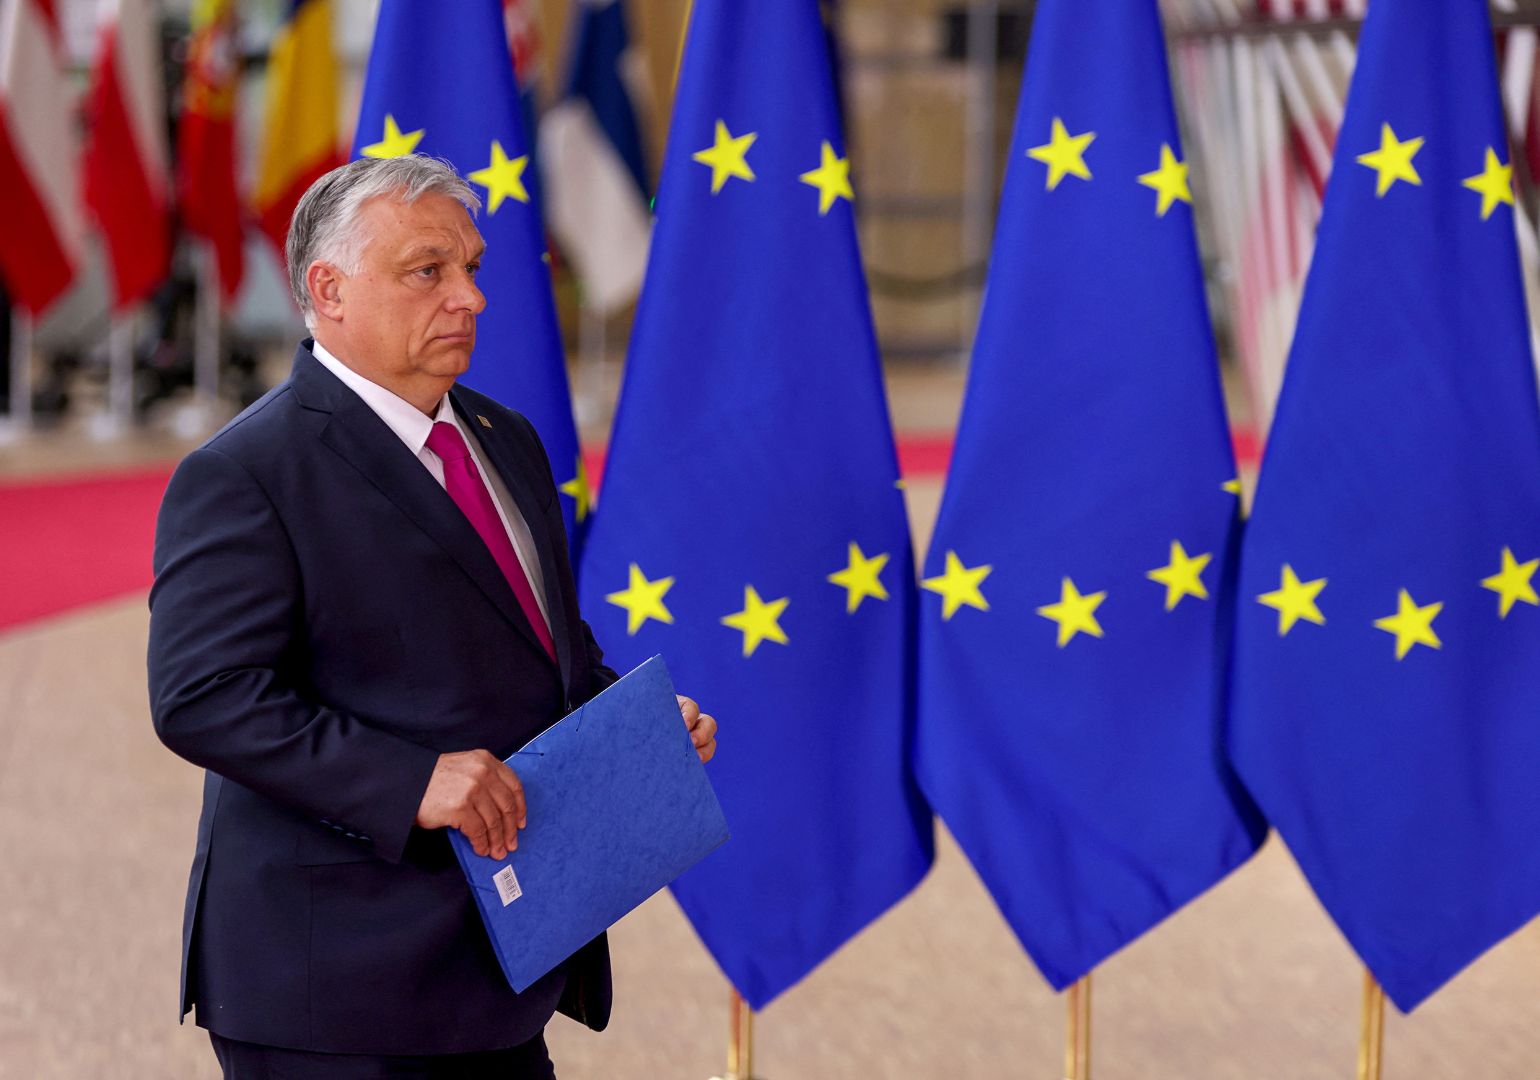 ევროკავშირის ლიდერებმა უკრაინისთვის €50-მილიარდიანი დახმარების პაკეტი დაამტკიცეს